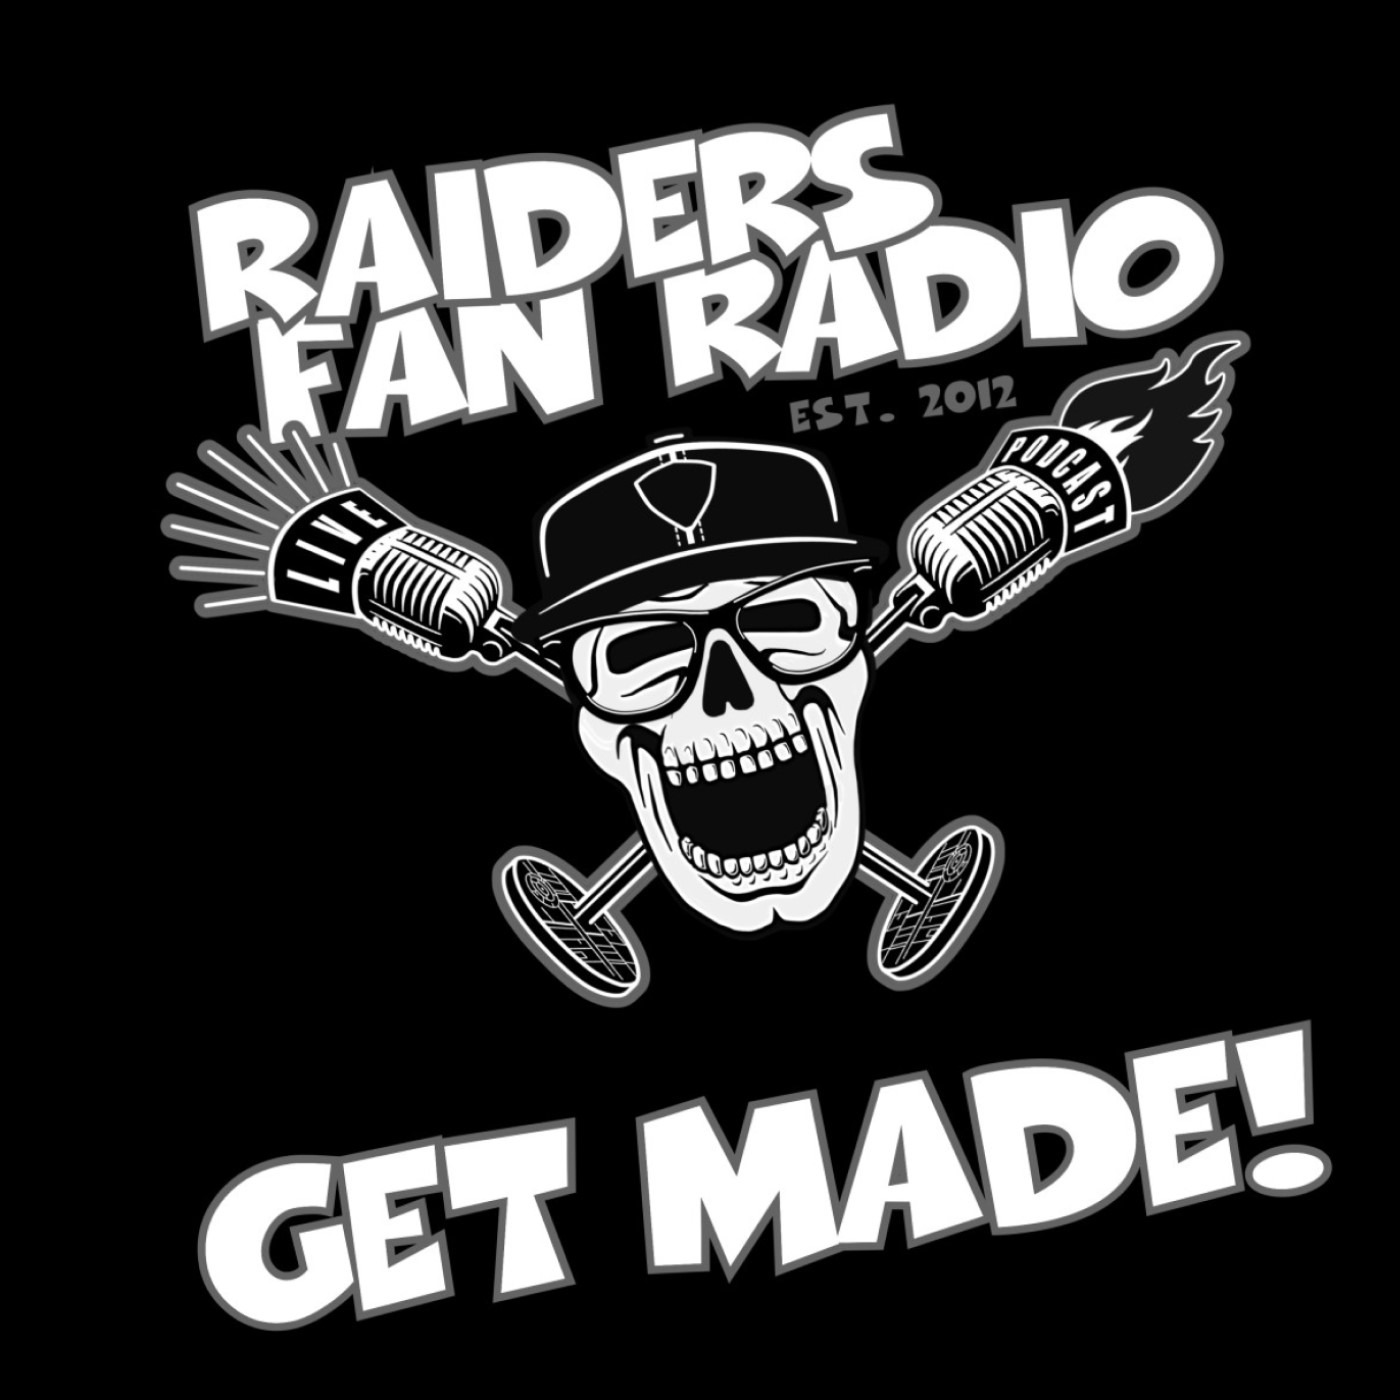 Raiders Fan Radio Ep. 286 It's Getting Drafty